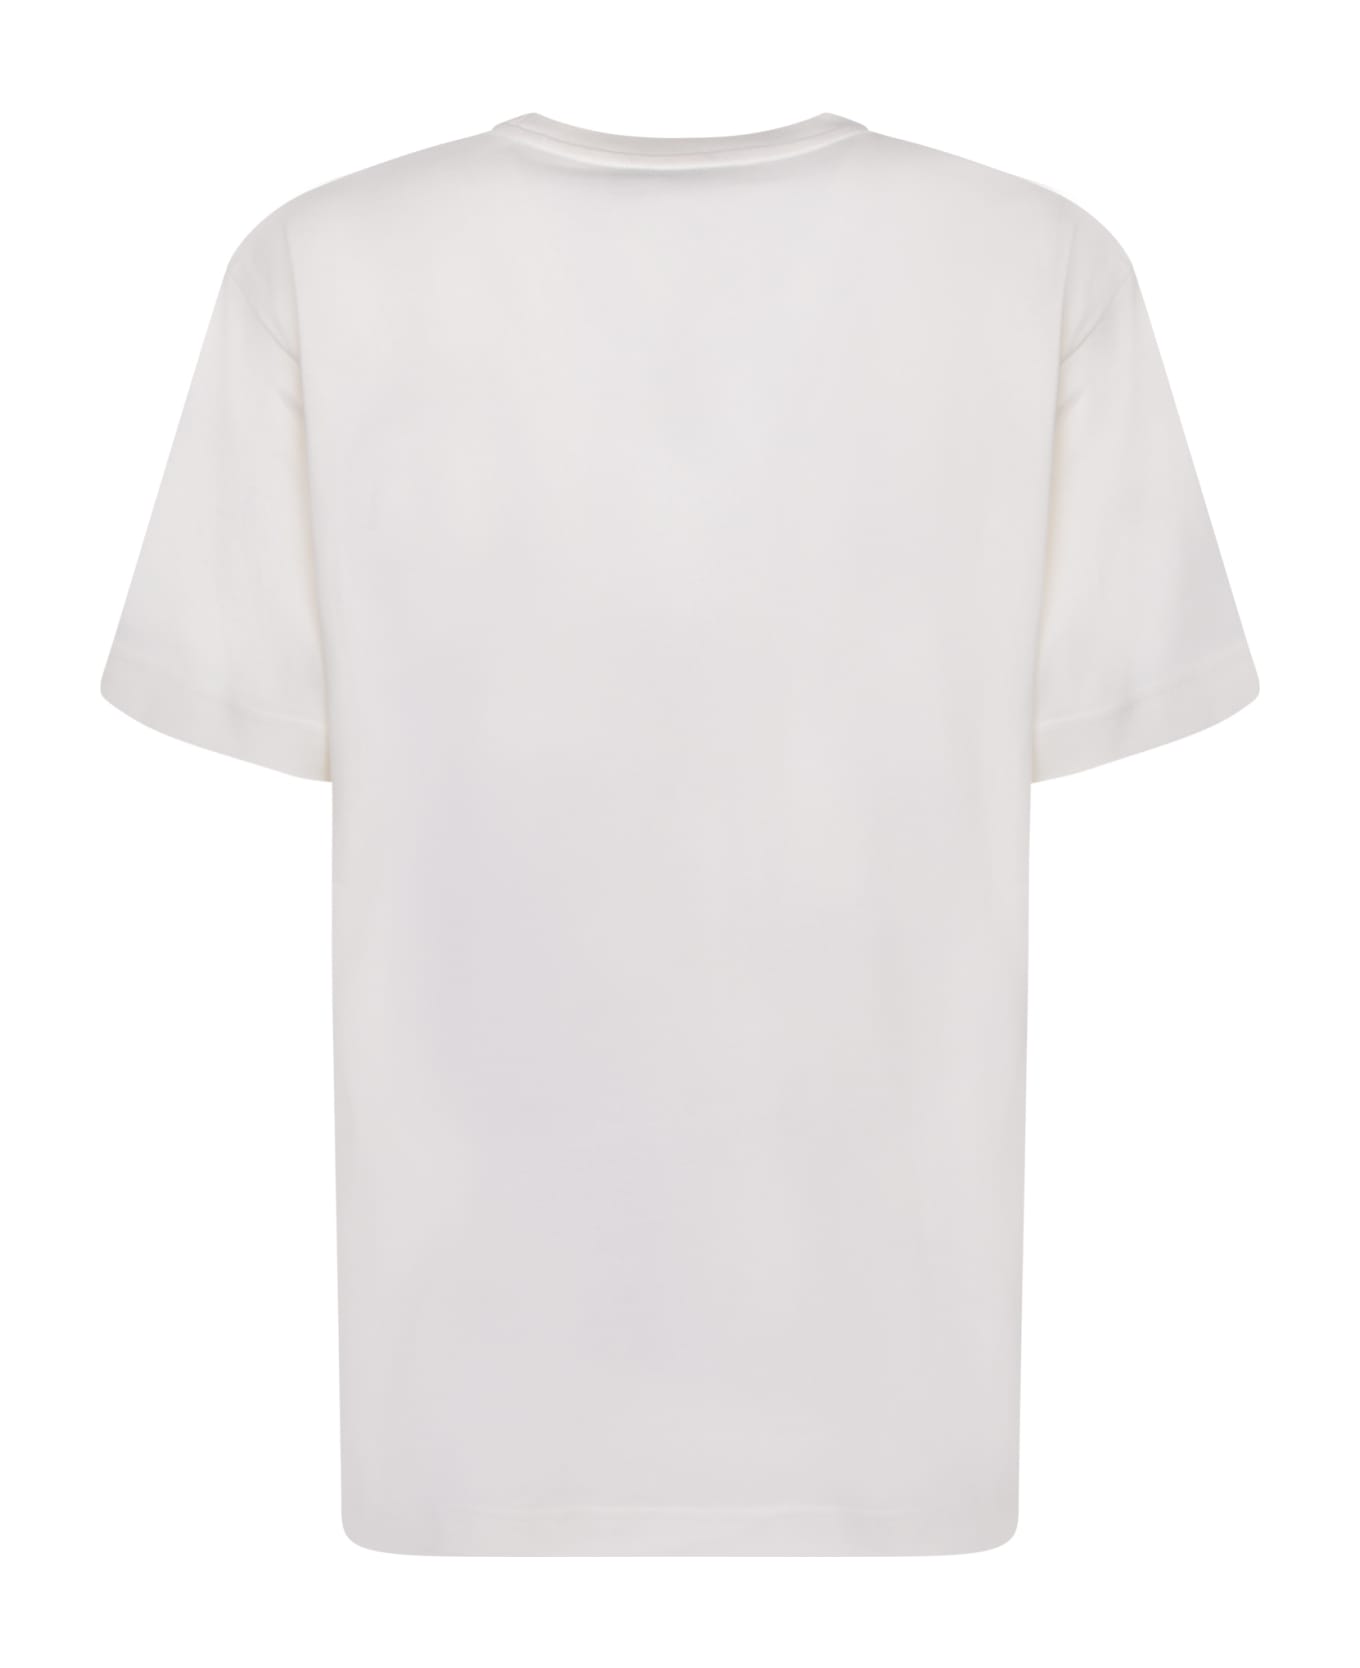 Moncler Logo Short Sleeves White T-shirt - Avorio